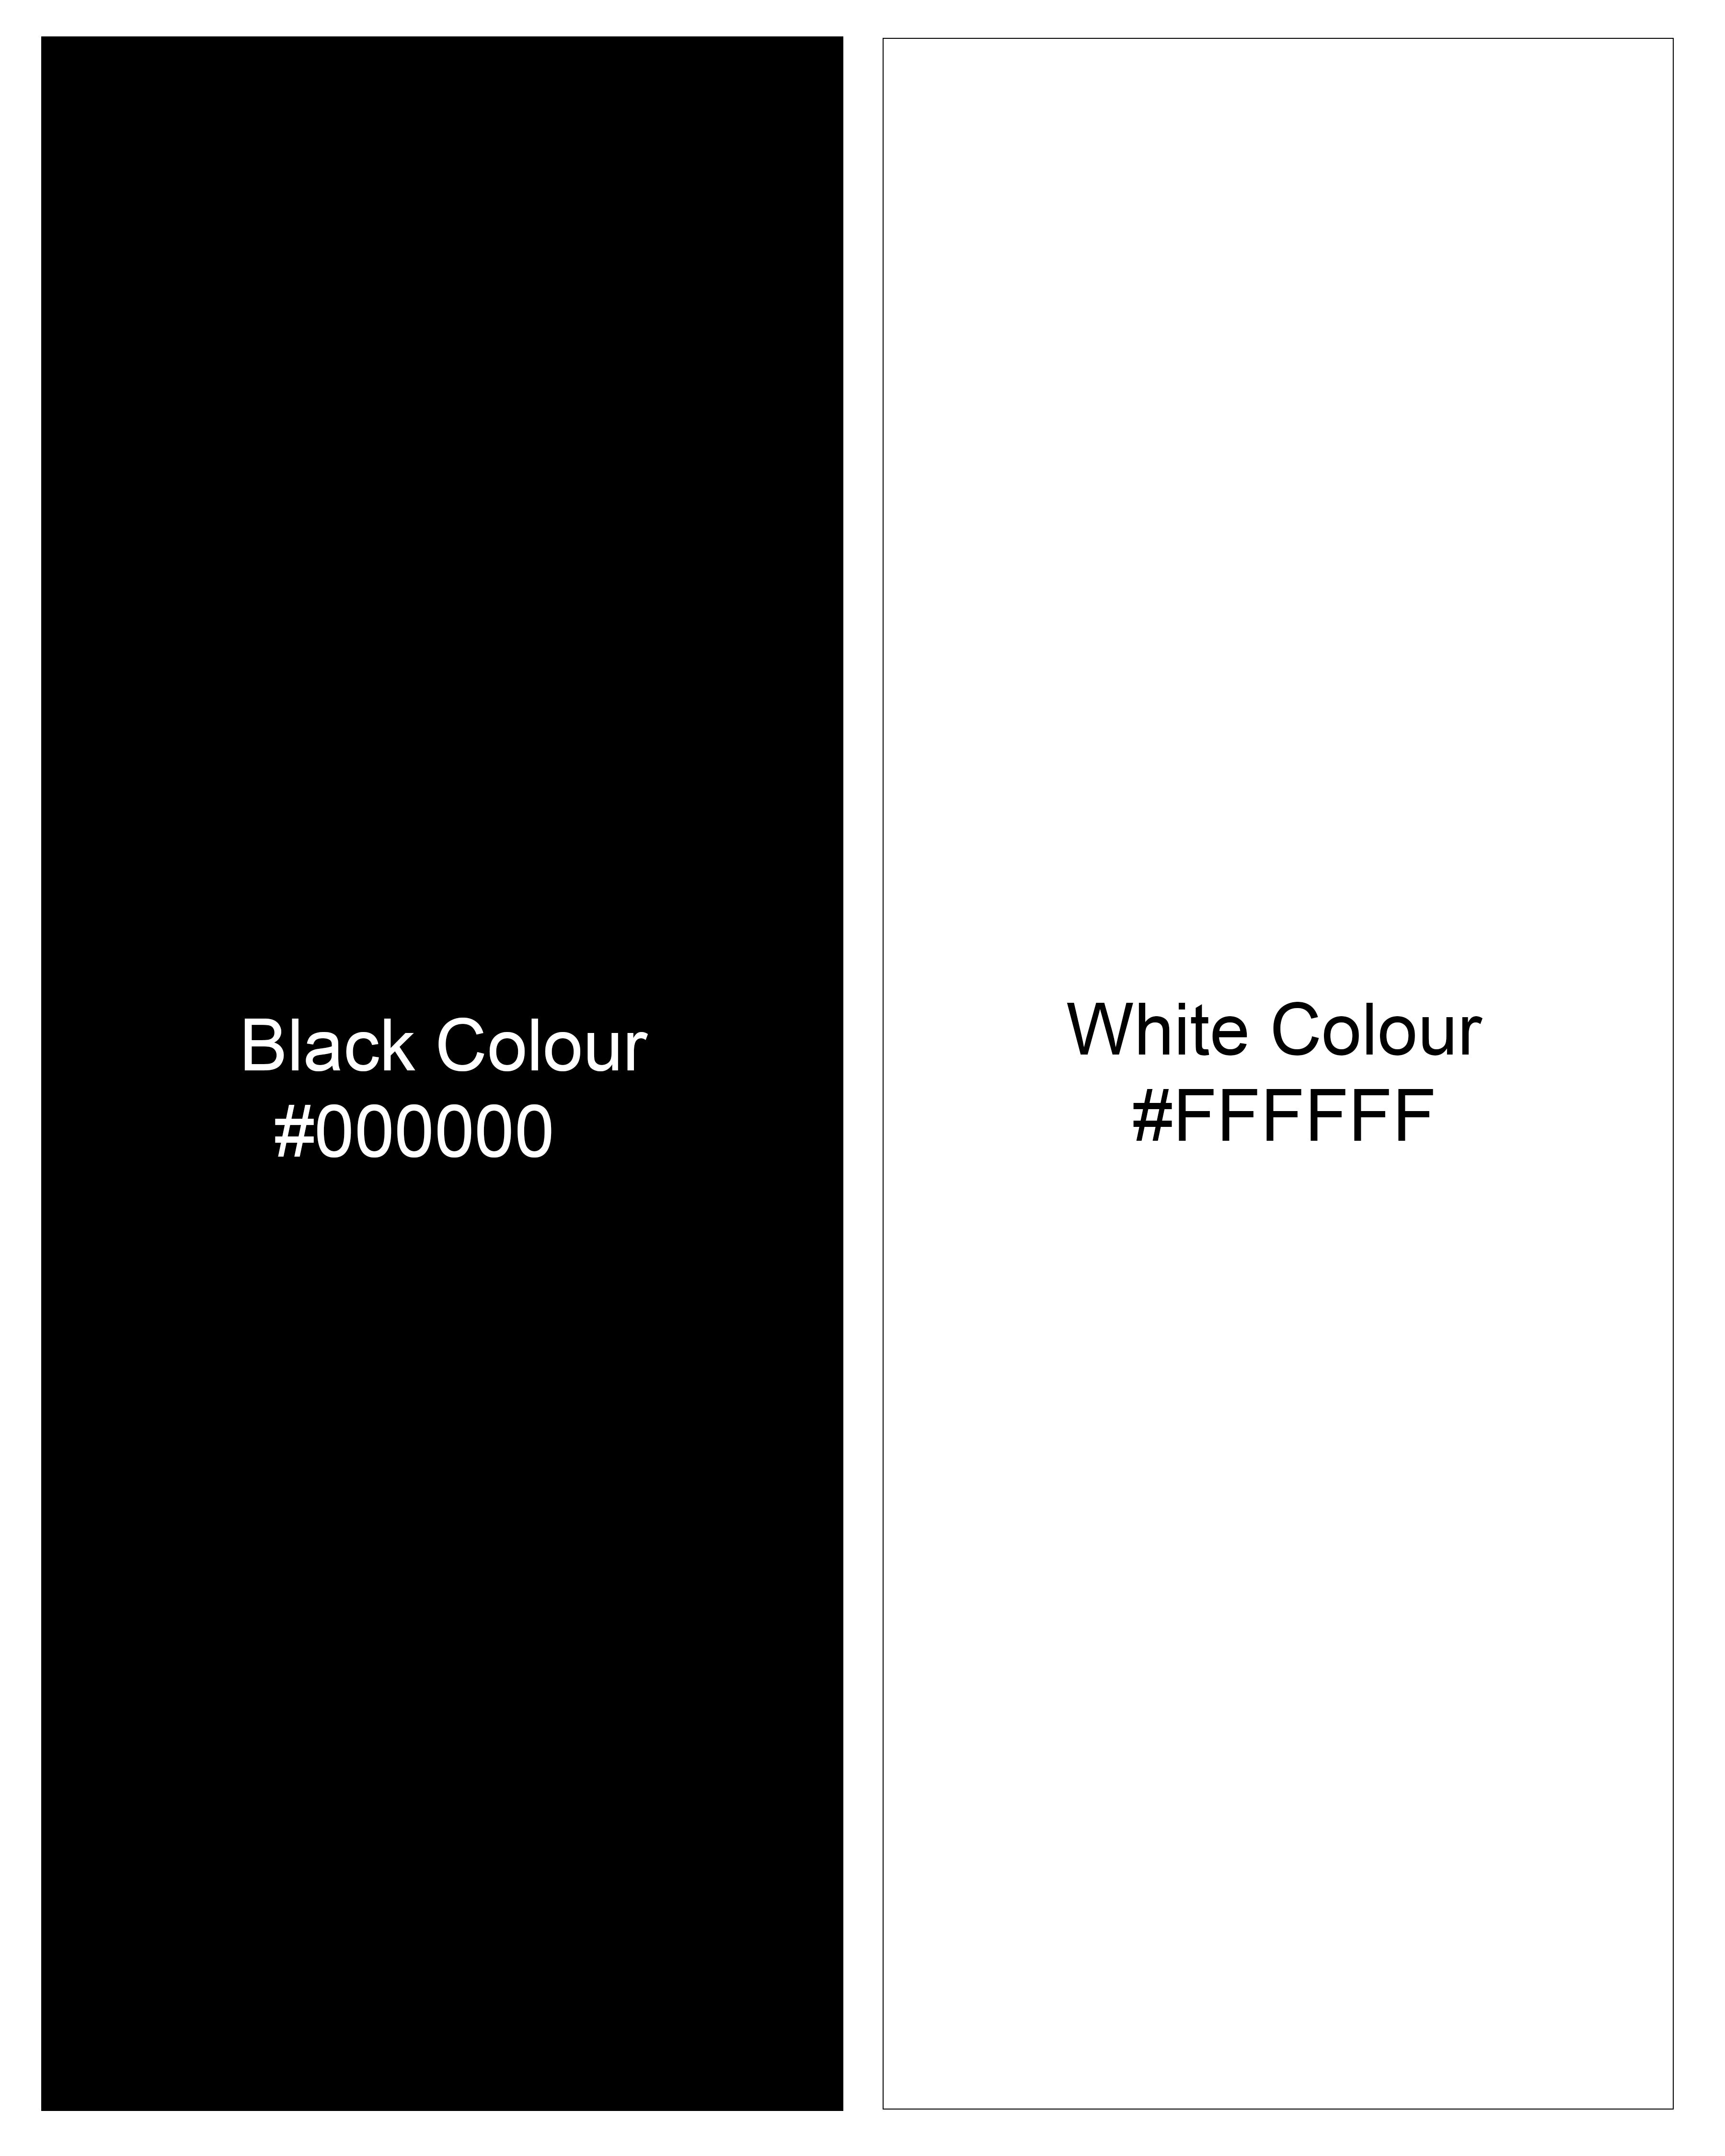 Jade Black and White Striped Waistcoat V2612-36, V2612-38, V2612-40, V2612-42, V2612-44, V2612-46, V2612-48, V2612-50, V2612-52, V2612-54, V2612-56, V2612-58, V2612-60